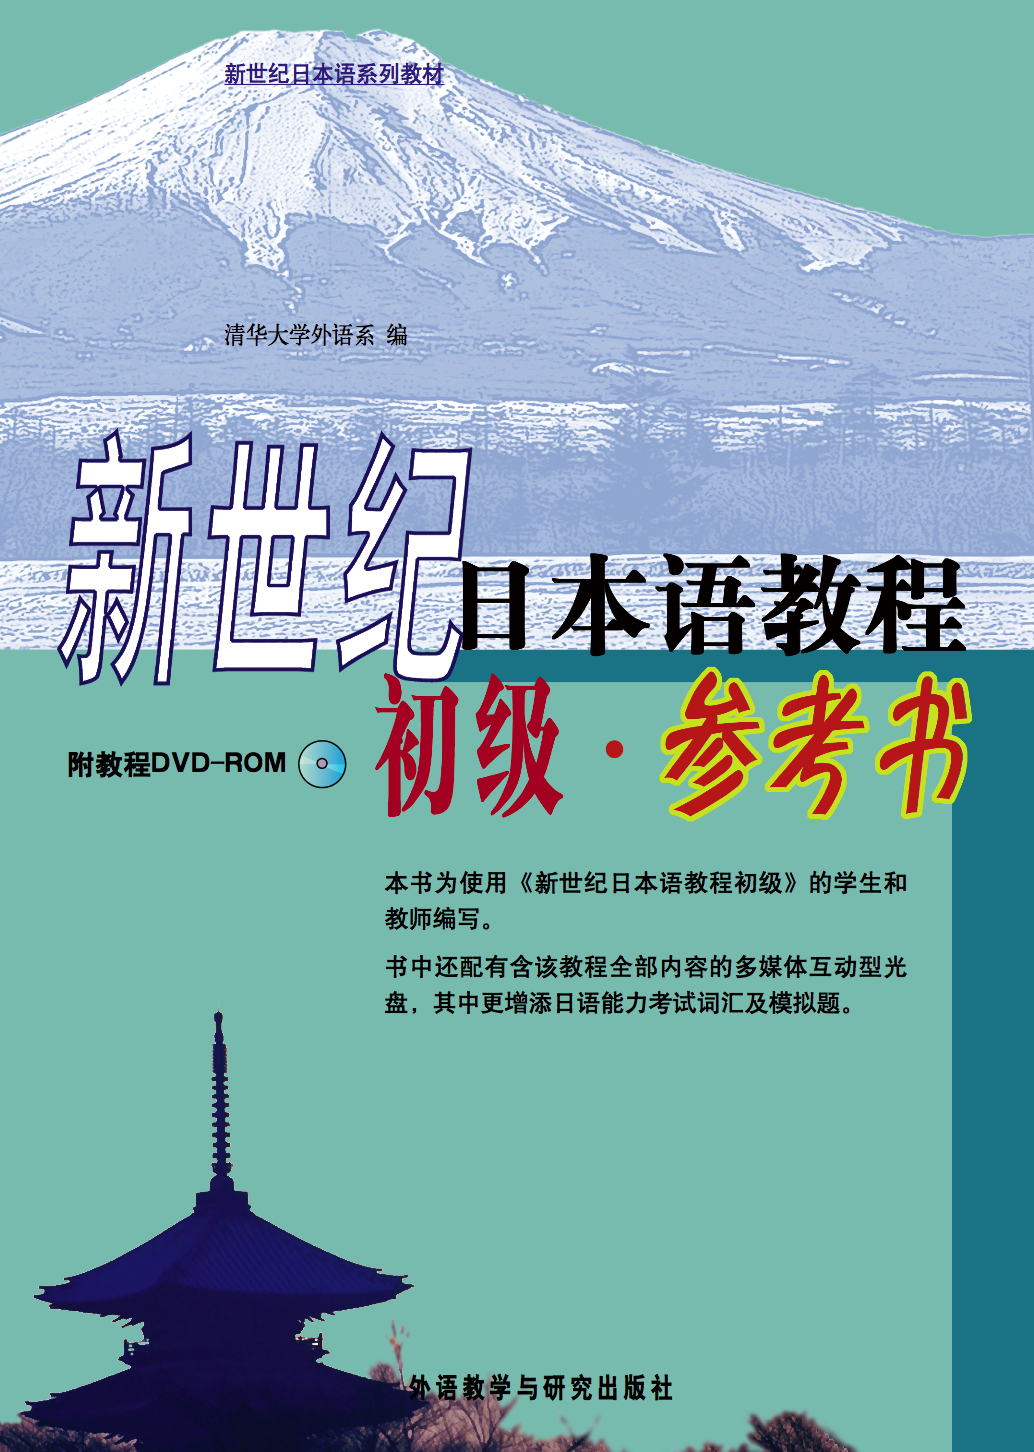 新世纪日本语教程(初级)(参考书)(附教程DVD-ROM)